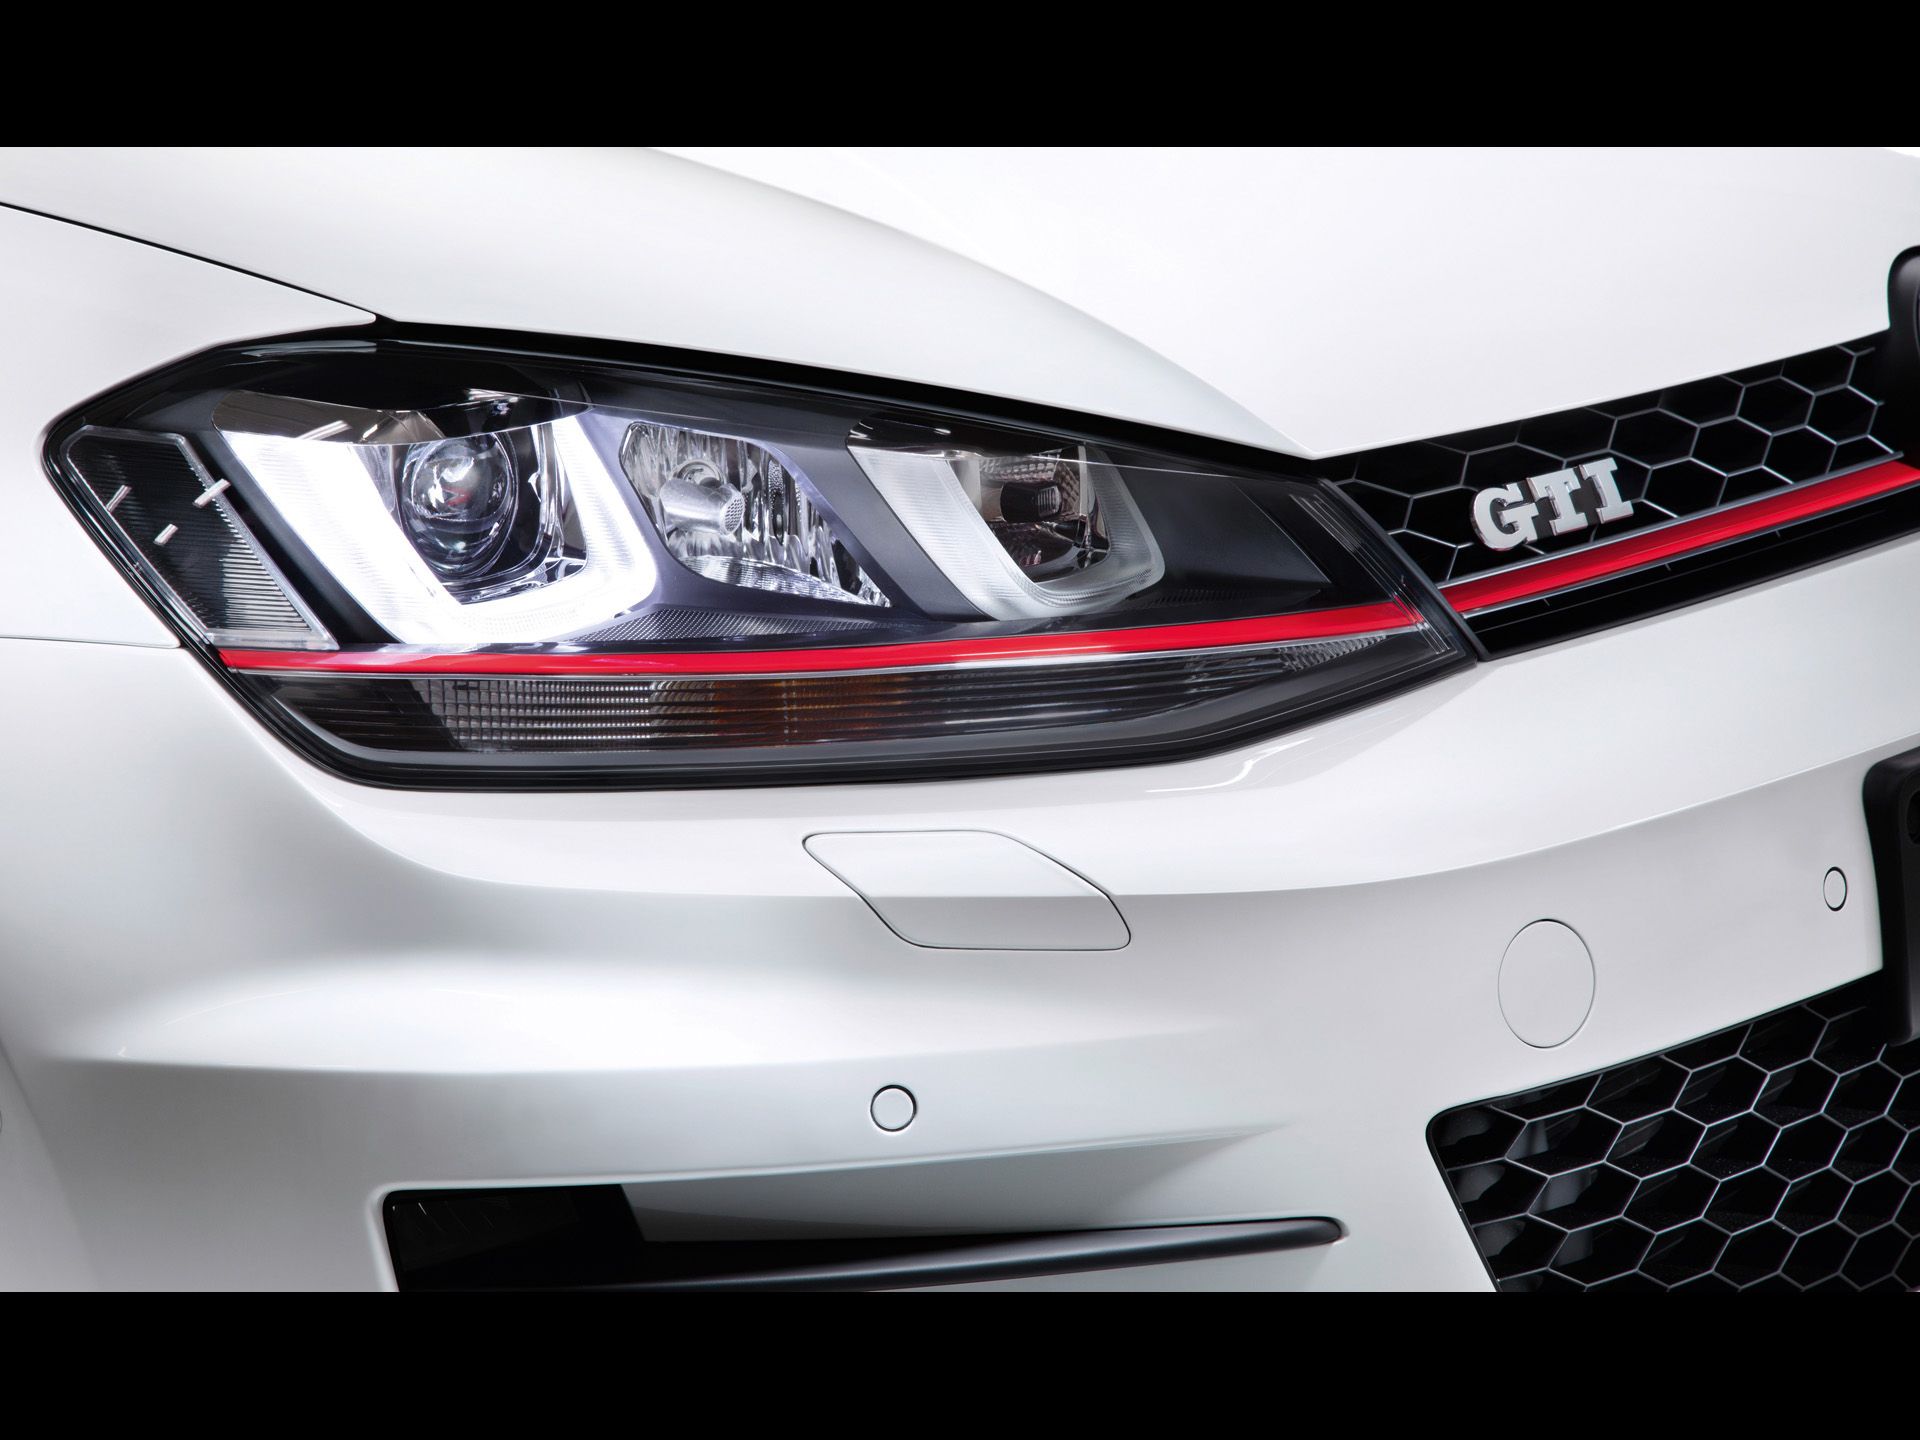 Volkswagen Golf 7 GTI Concept Headlights wallpaper Volkswagen Golf 7 GTI Concept Headlights stock phot